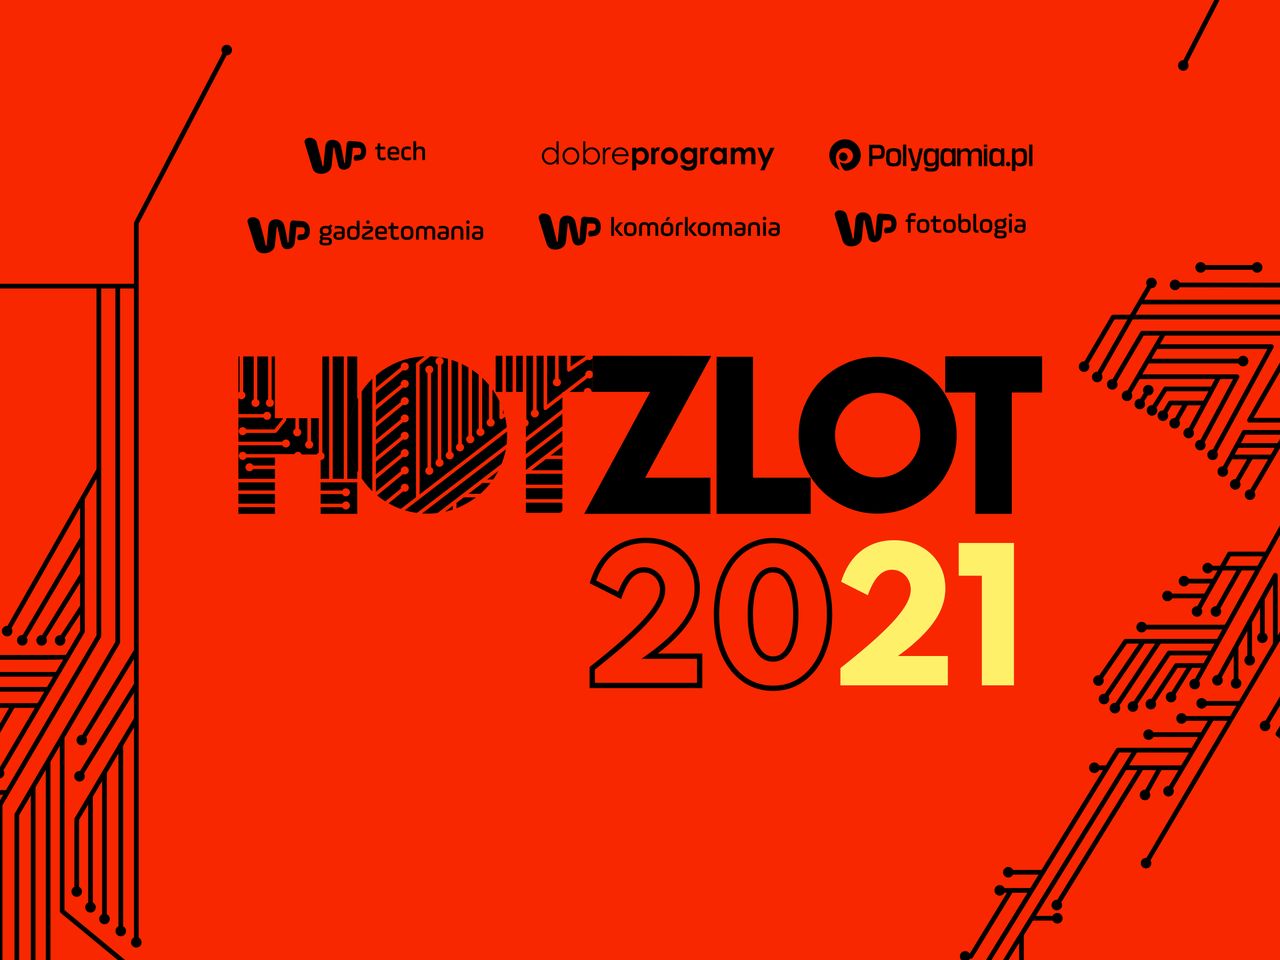 HotZlot 2021